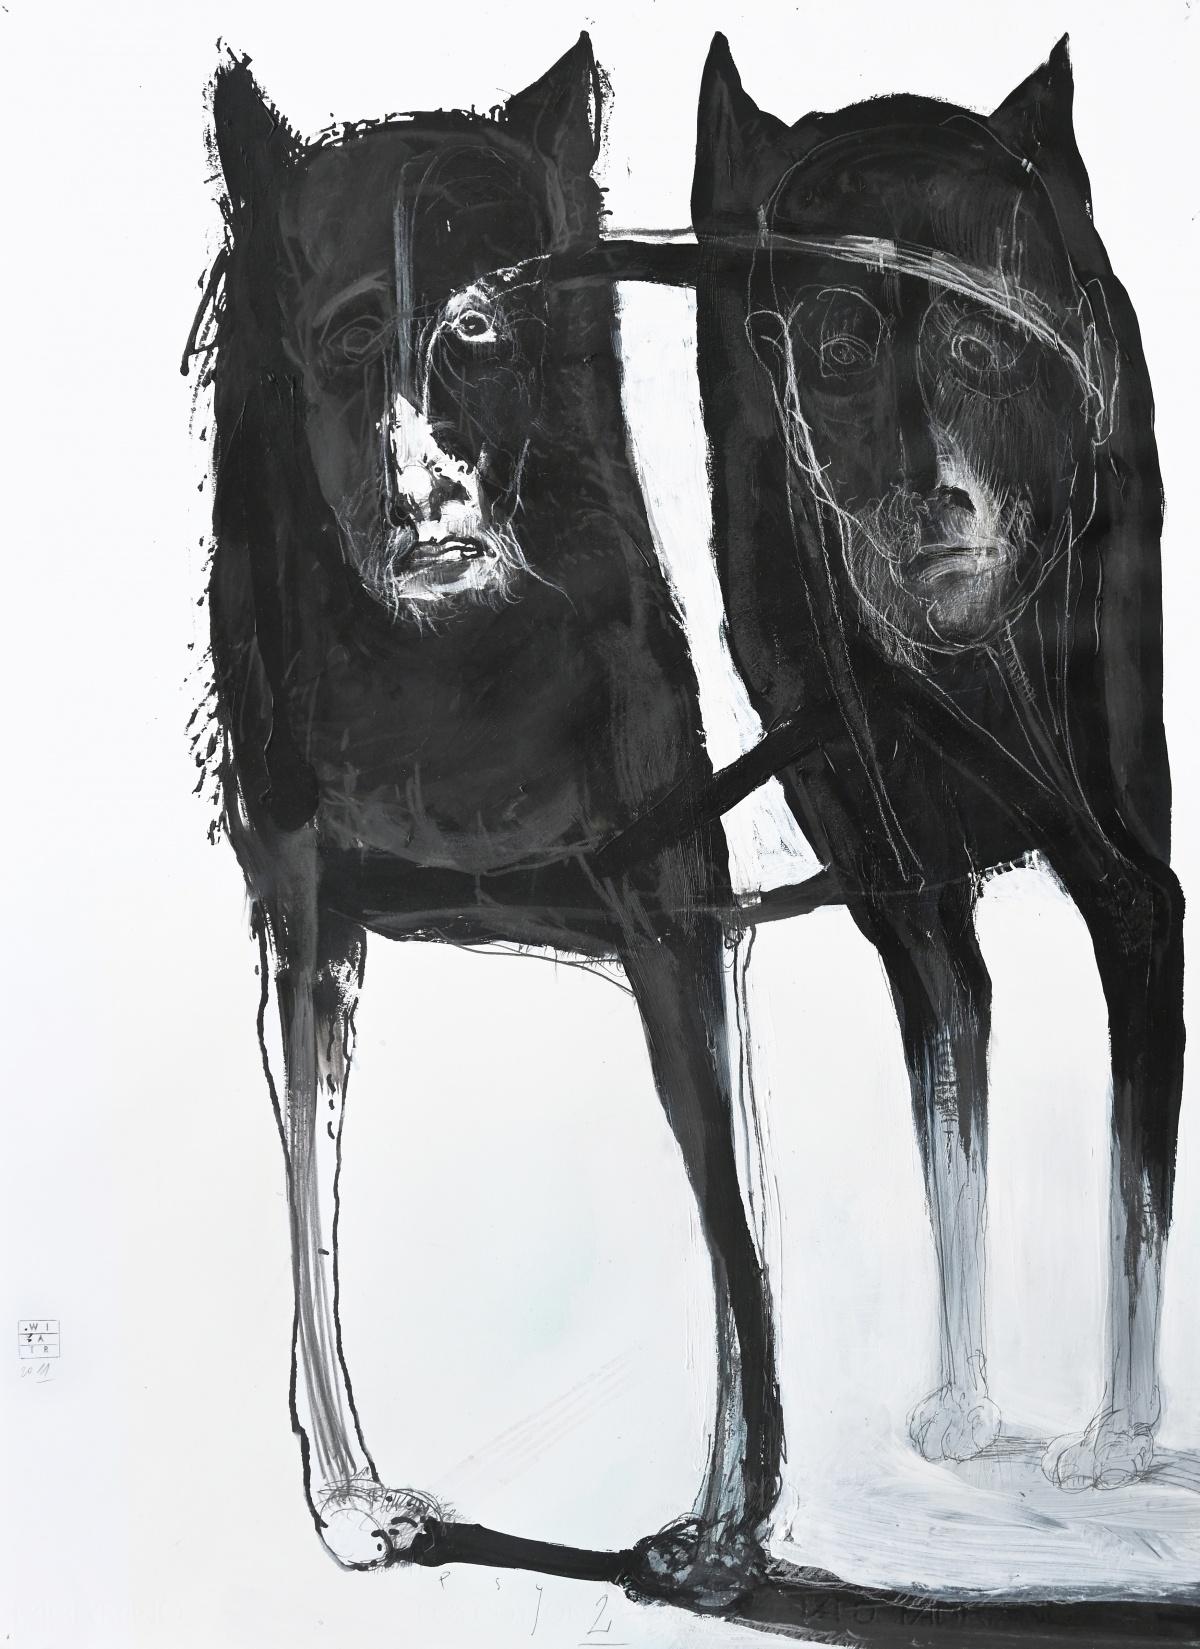 Dogs 2 – Zeitgenössische Zeichnung, figurativ, Schwarz-Weiß, polnischer Künstler